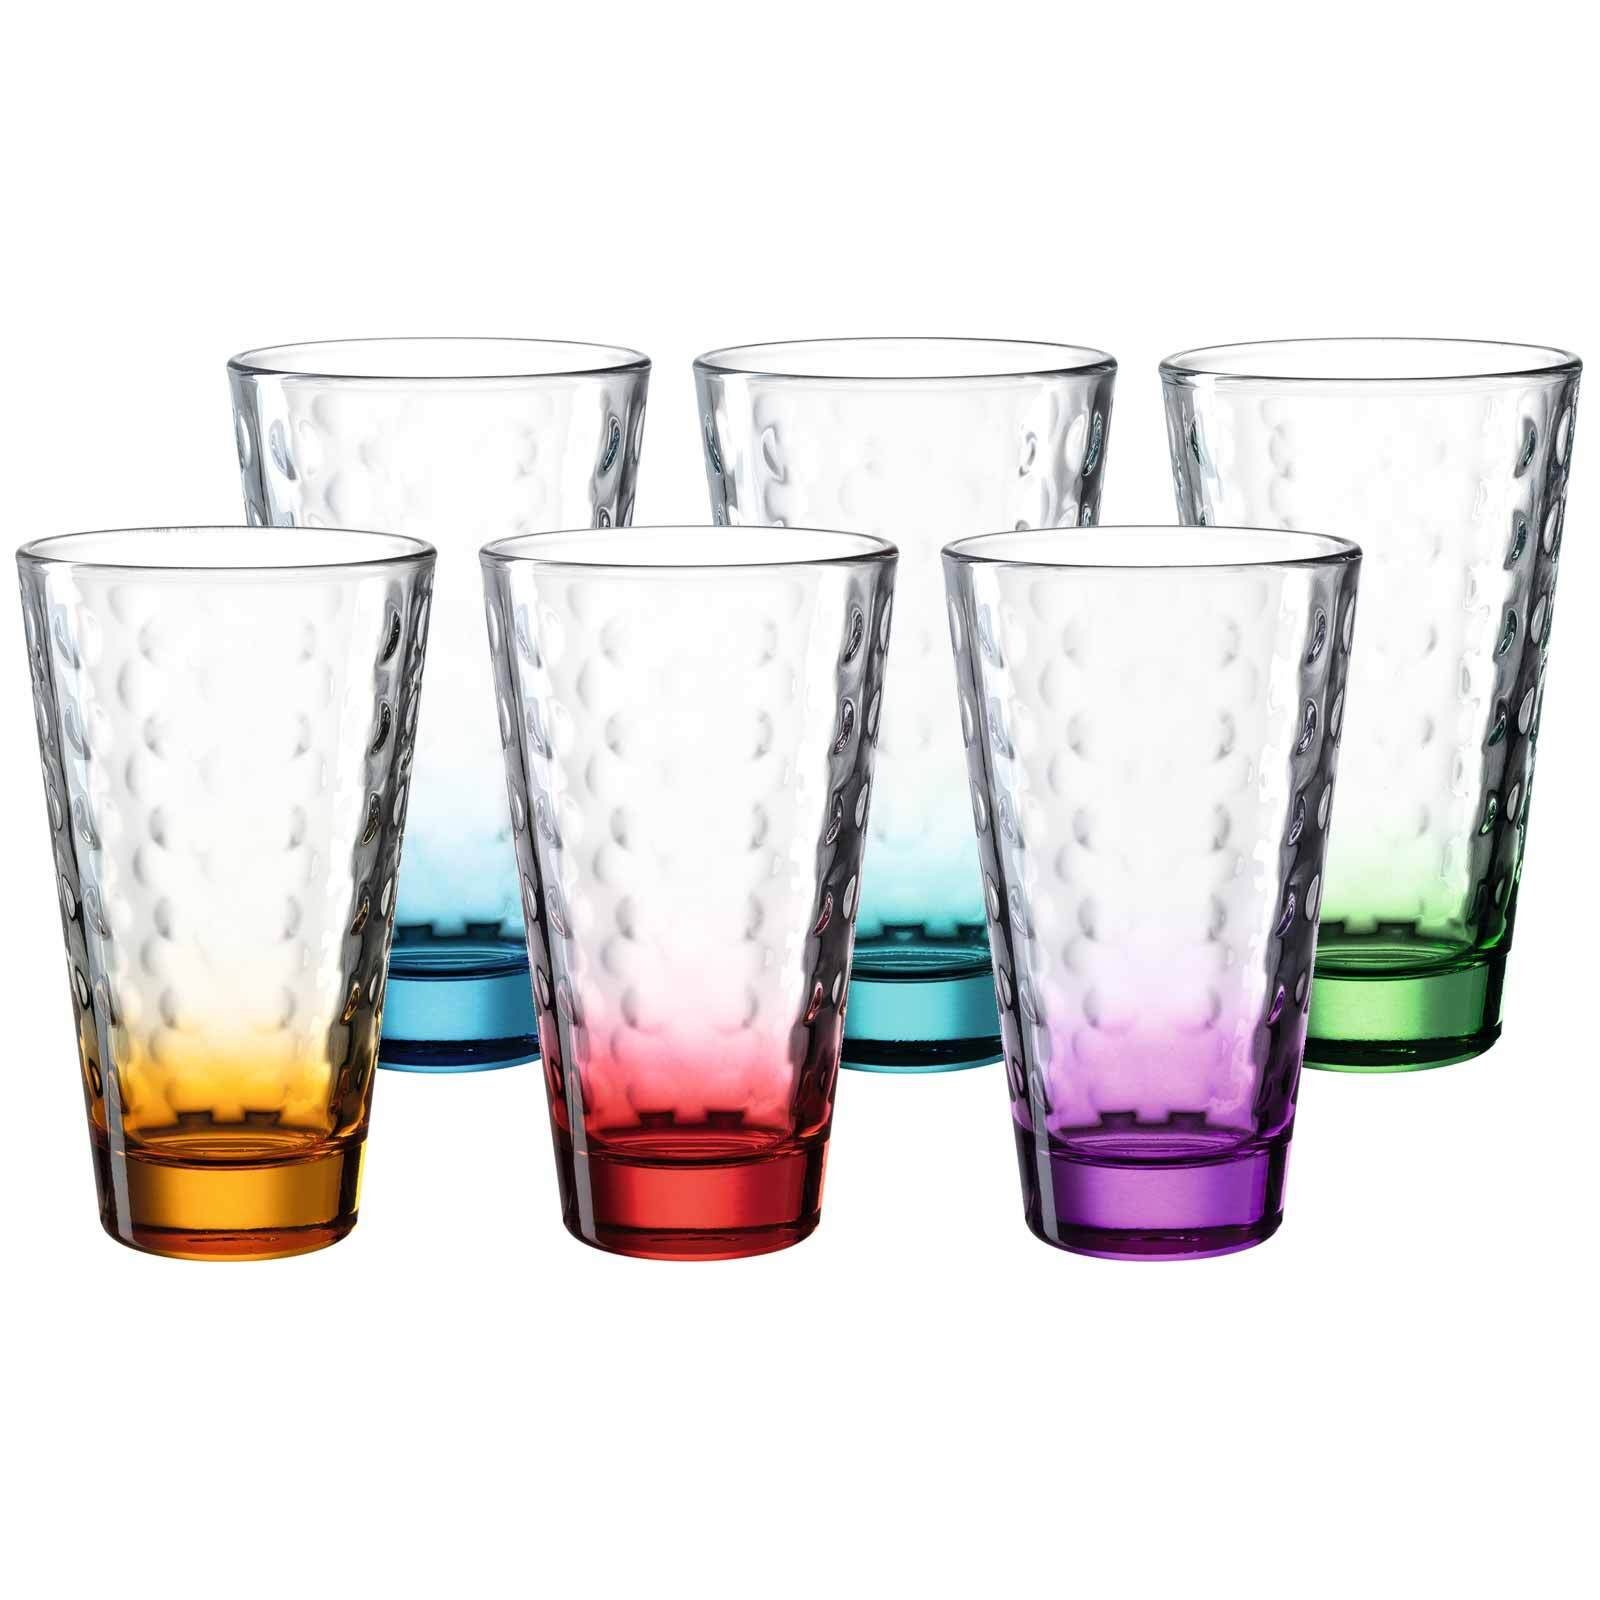 LEONARDO Glas Optic Trinkgläser 300 ml 6er Set, Glas, In vielen  verschiedenen Farben erhältlich